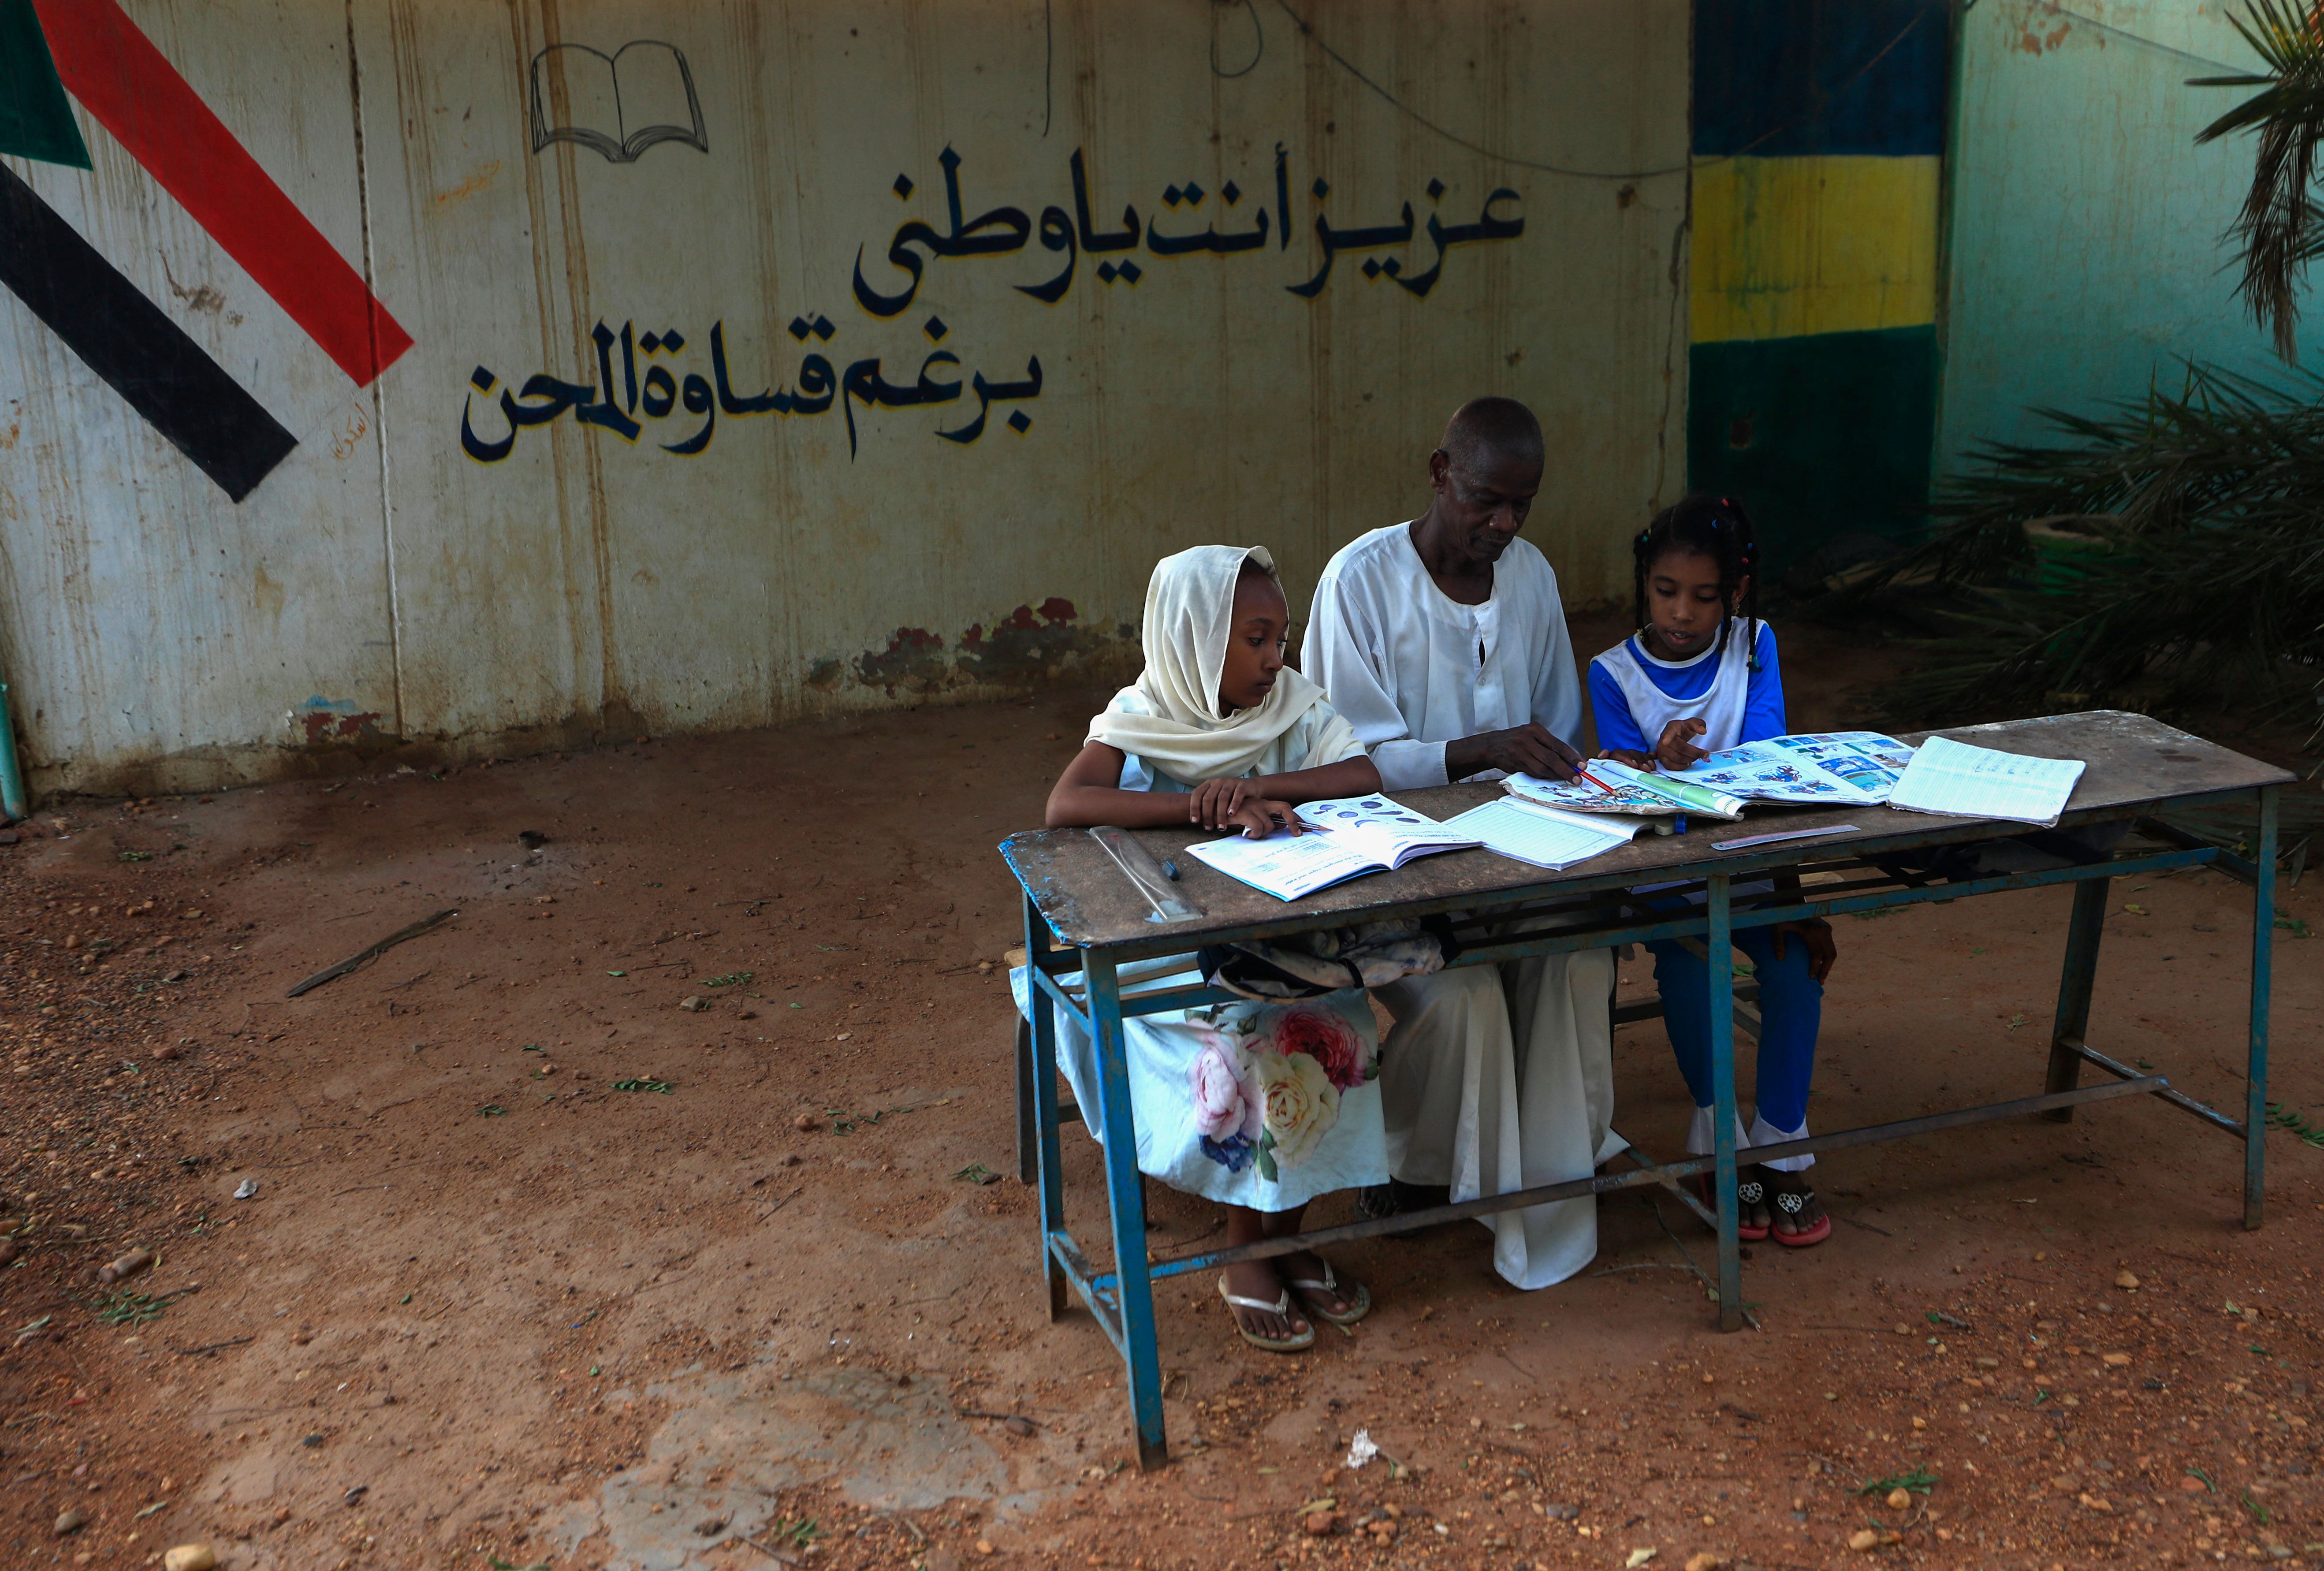 أوضاع صعبة لتلاميذ السودان (أشرف شاذلي/ فرانس برس)